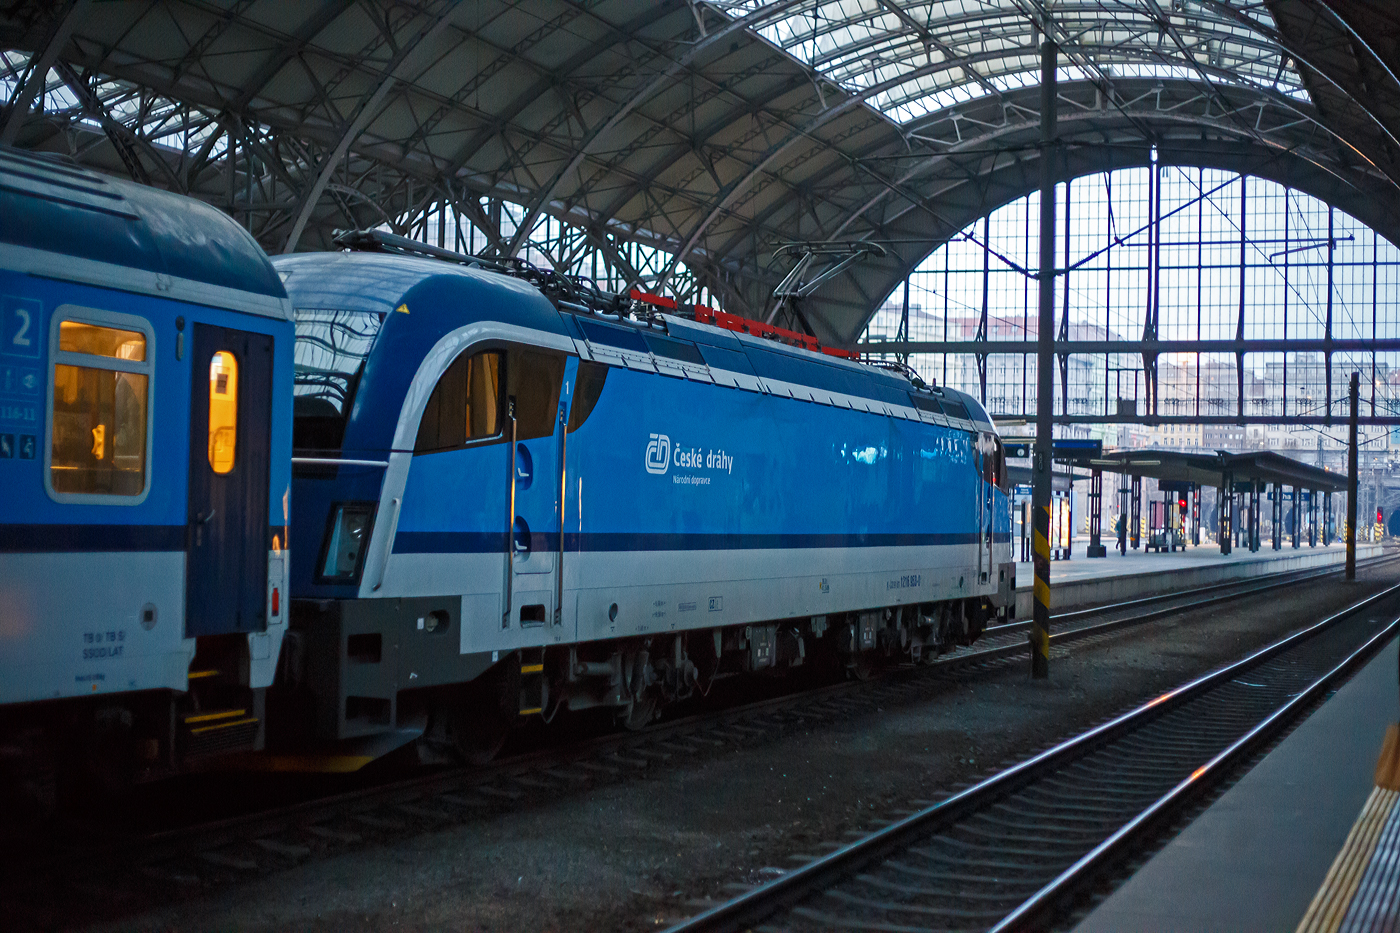 Die ČD Taurus 3 (bzw. SIEMENS ES 64 U4-C3) 1216 953-0 (91 81 1216 953-0 A-CD) Česk drhy (Tschechische Bahnen) erreicht am frhen Morgen des 24.11.2022, mit einem IC den Prager Hauptbahnhof (Praha hlavn ndra).

Die Siemens ES 64 U4-C3 (Variante C3 fr sterreich, Deutschland, Tschechien und Slowakei (A/D/CZ/SK) wurde 2010 von Siemens Mobilitiy in Mnchen-Allach unter der Fabriknummer 21414 gebaut und 2011 an die WLC - Wiener Lokalbahnen Cargo GmbH (Wien) als WLC 1216 953 (91 81 1216 953-0 A-WLC) geliefert. Im August 2021 wurde sie an die ČD - Cesk drhy  a.s. verkauft, ist aber weiterhin in sterreich eingestellt.
